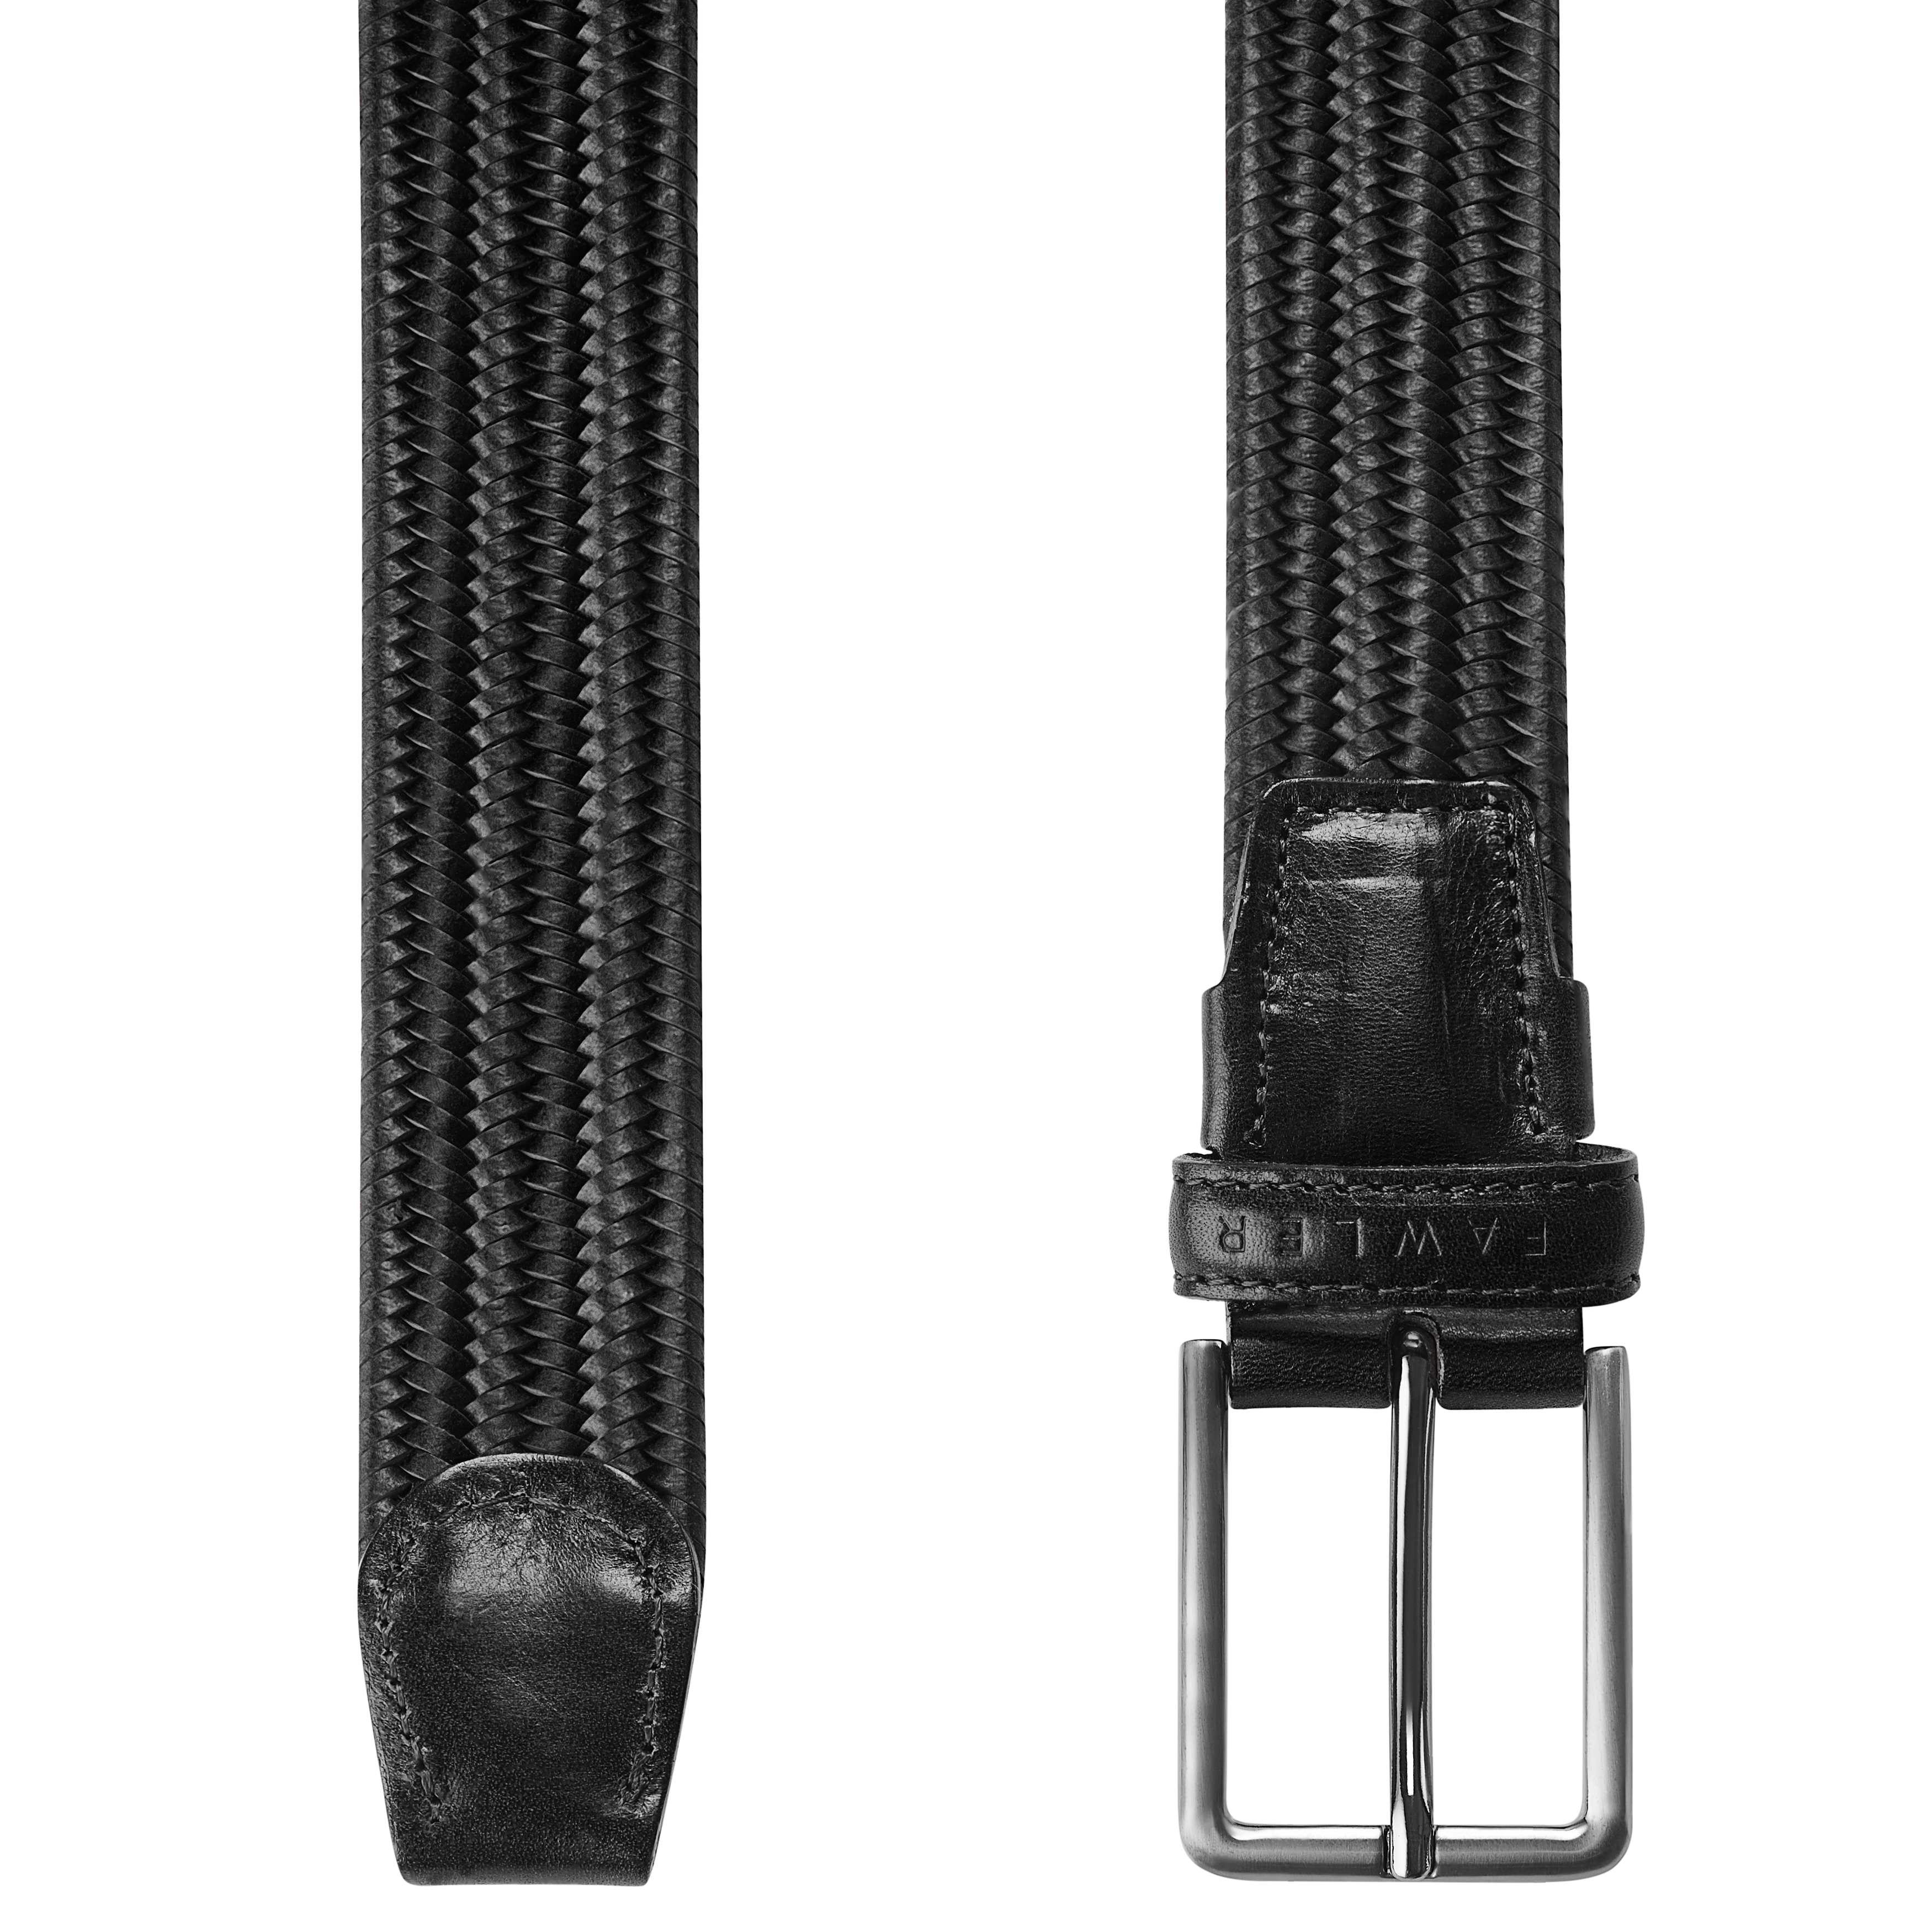 Black Braided Italian Full-grain Leather Belt, In stock!